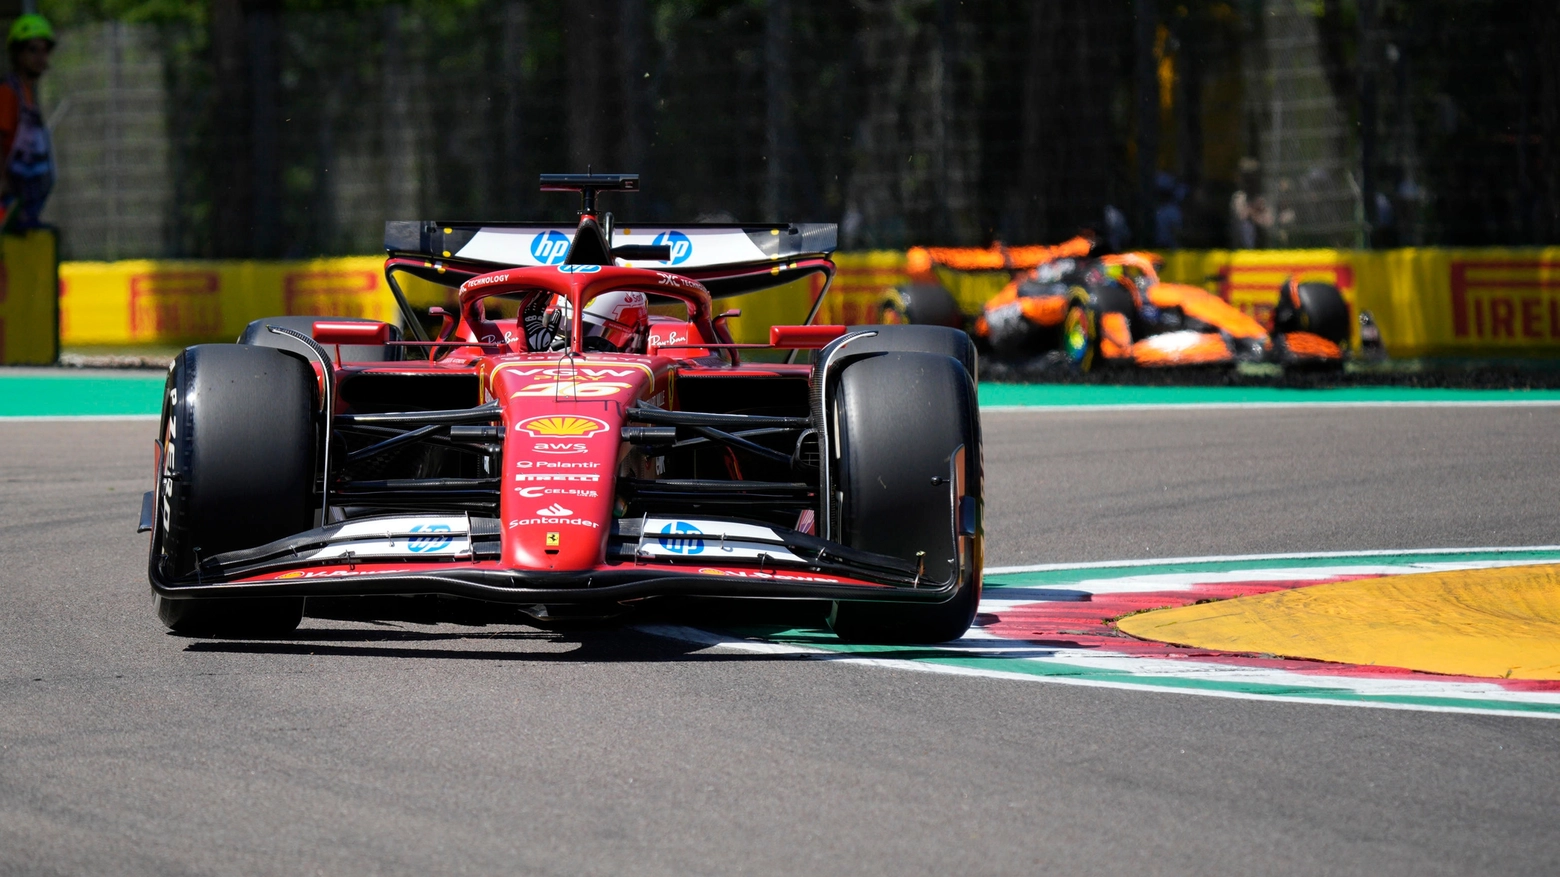 Dopo un ottimo venerdì, la Rossa si conferma anche nell’ultima sessione di prove. Ancora in difficoltà Max Verstappen con la Red Bull. Brutto incidente per Fernando Alonso